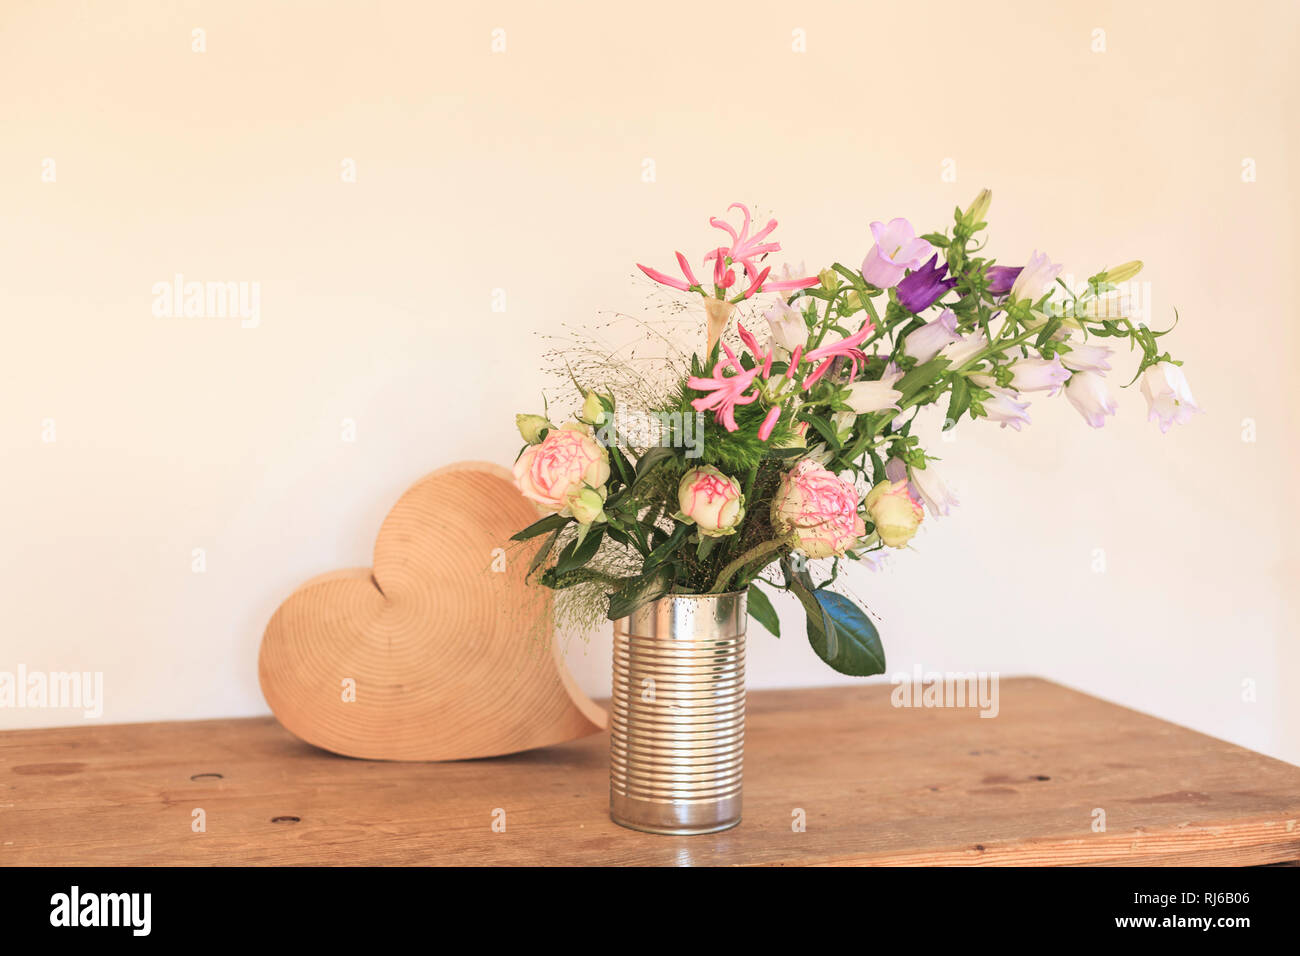 Strauß Sommerblumen, Dose als Vase, daneben ein Herz aus Holz Foto Stock